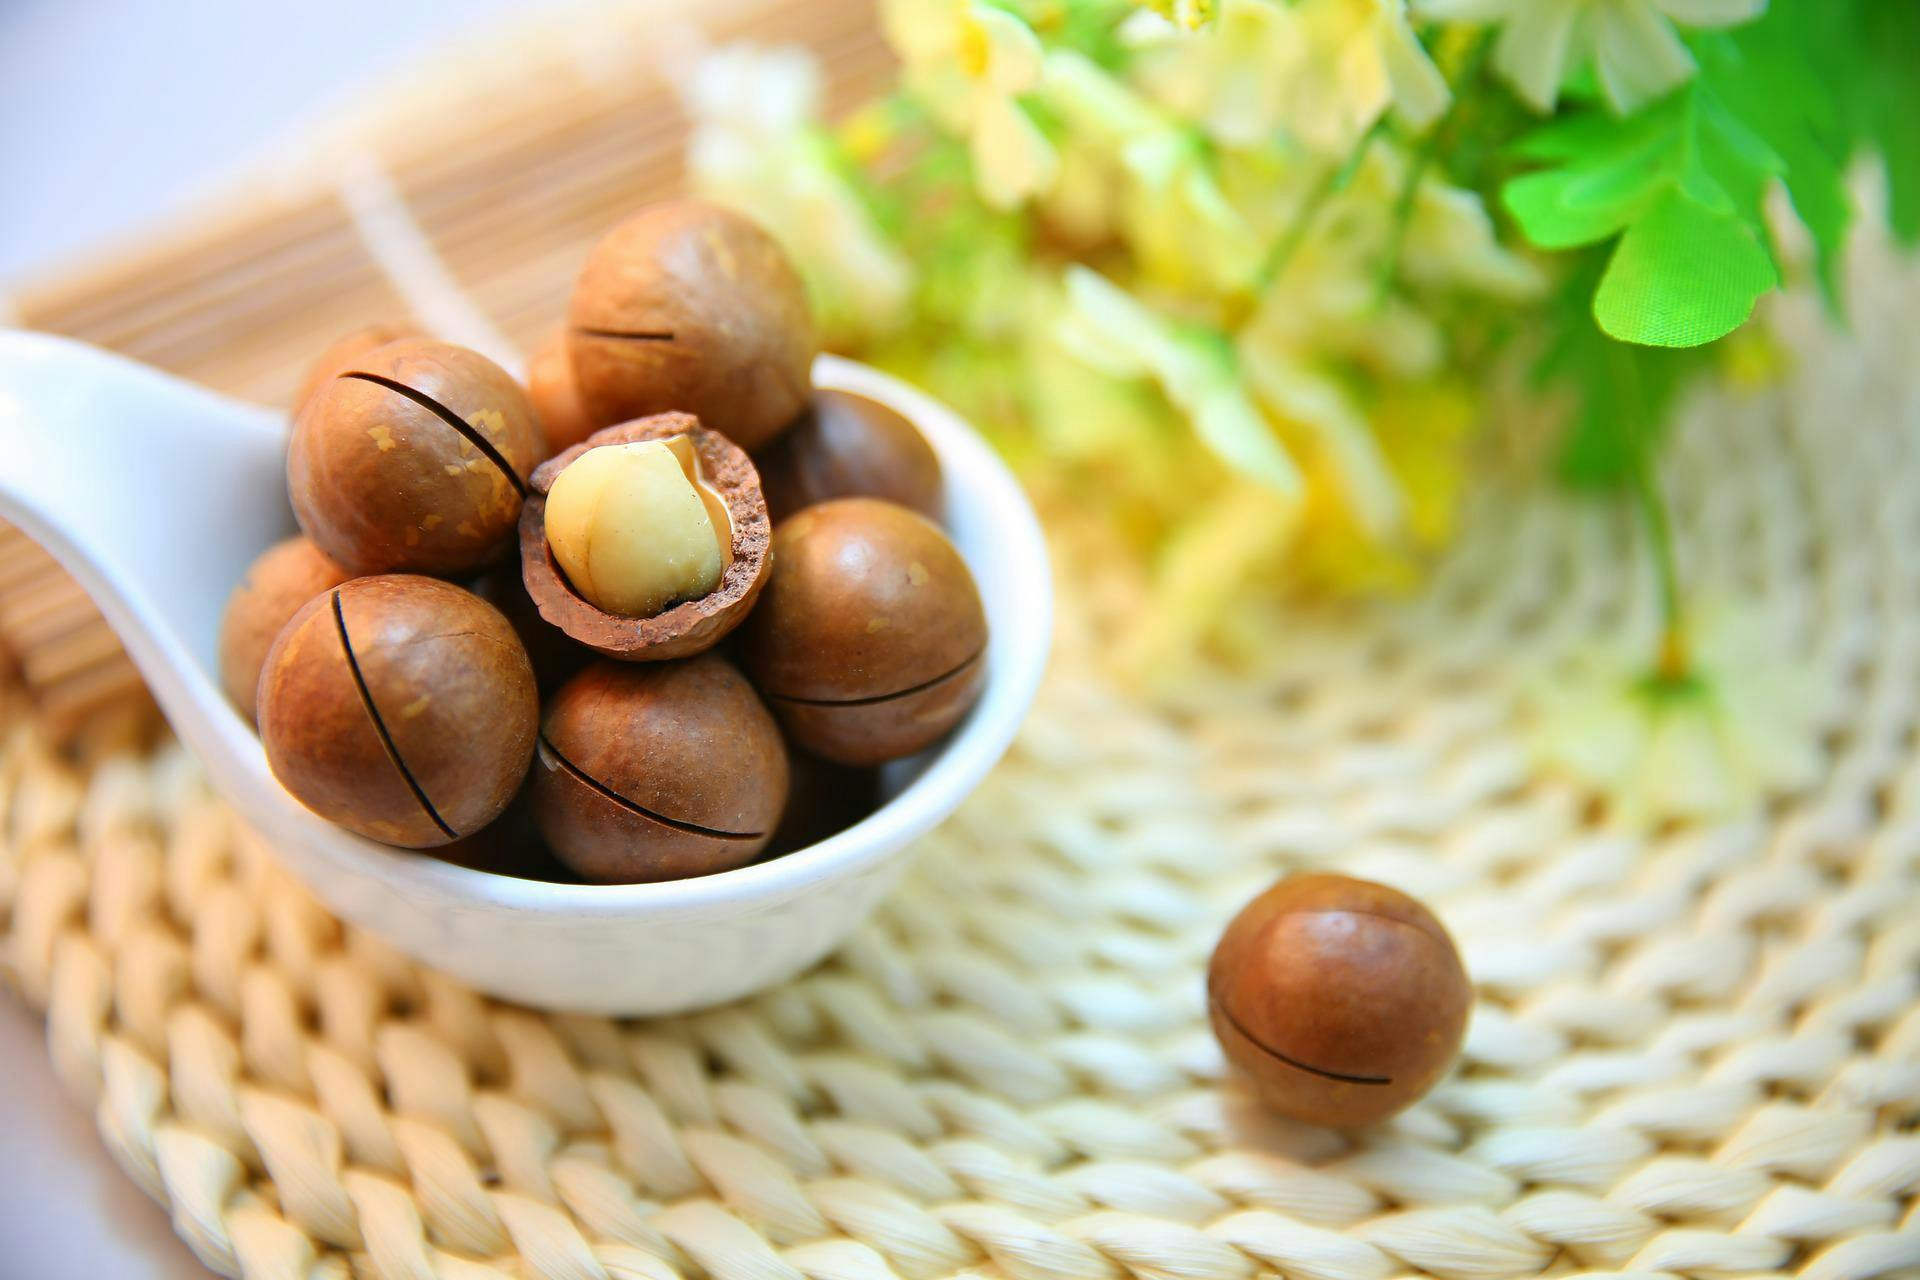 Noix de Macadamia : utilisations et bienfaits nutritionnels